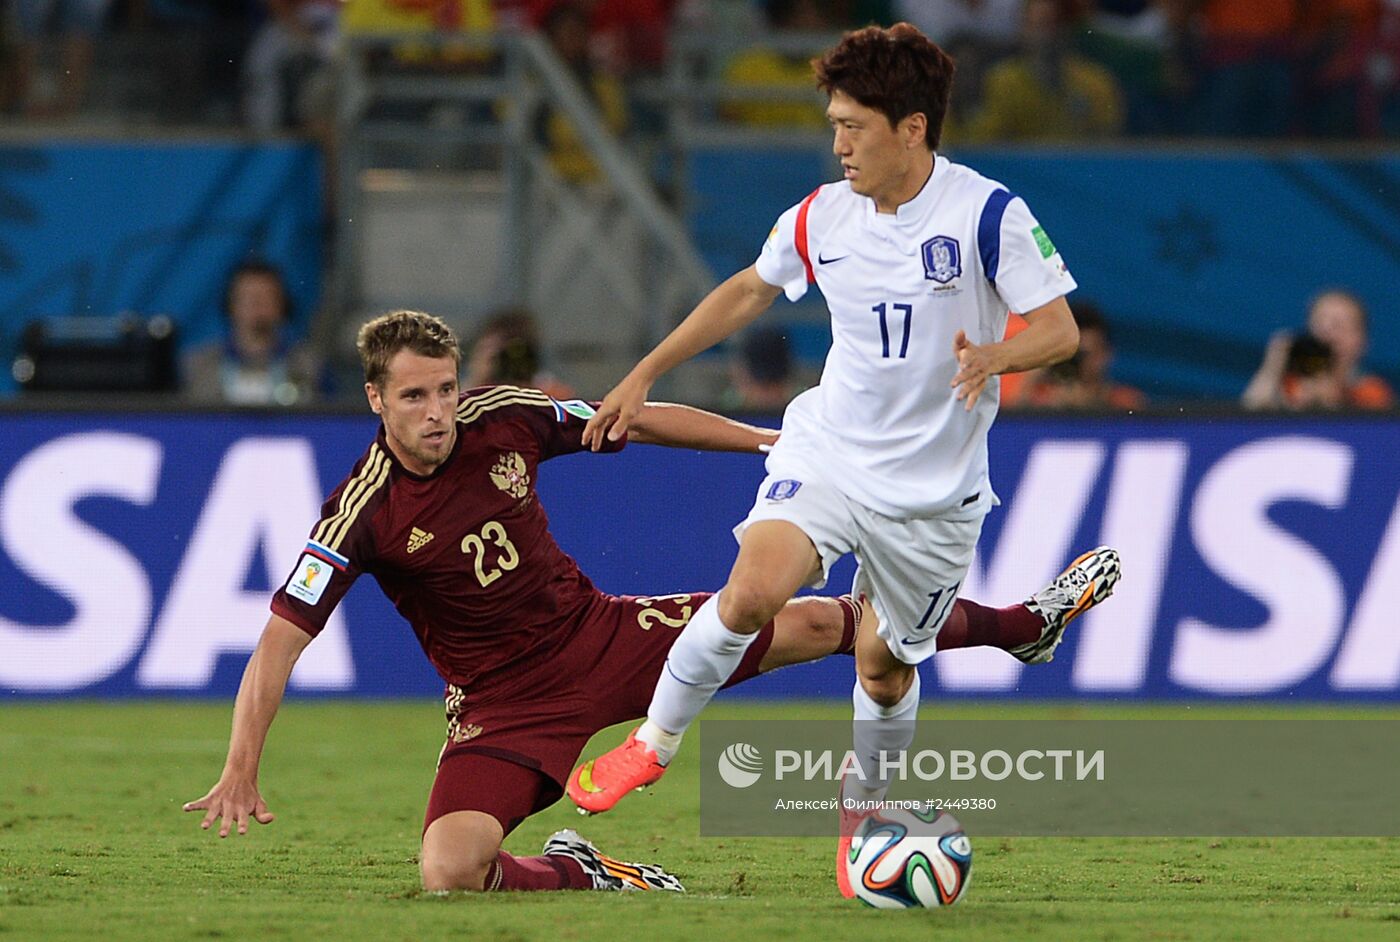 Футбол. Чемпионат мира - 2014. Матч Россия - Южная Корея